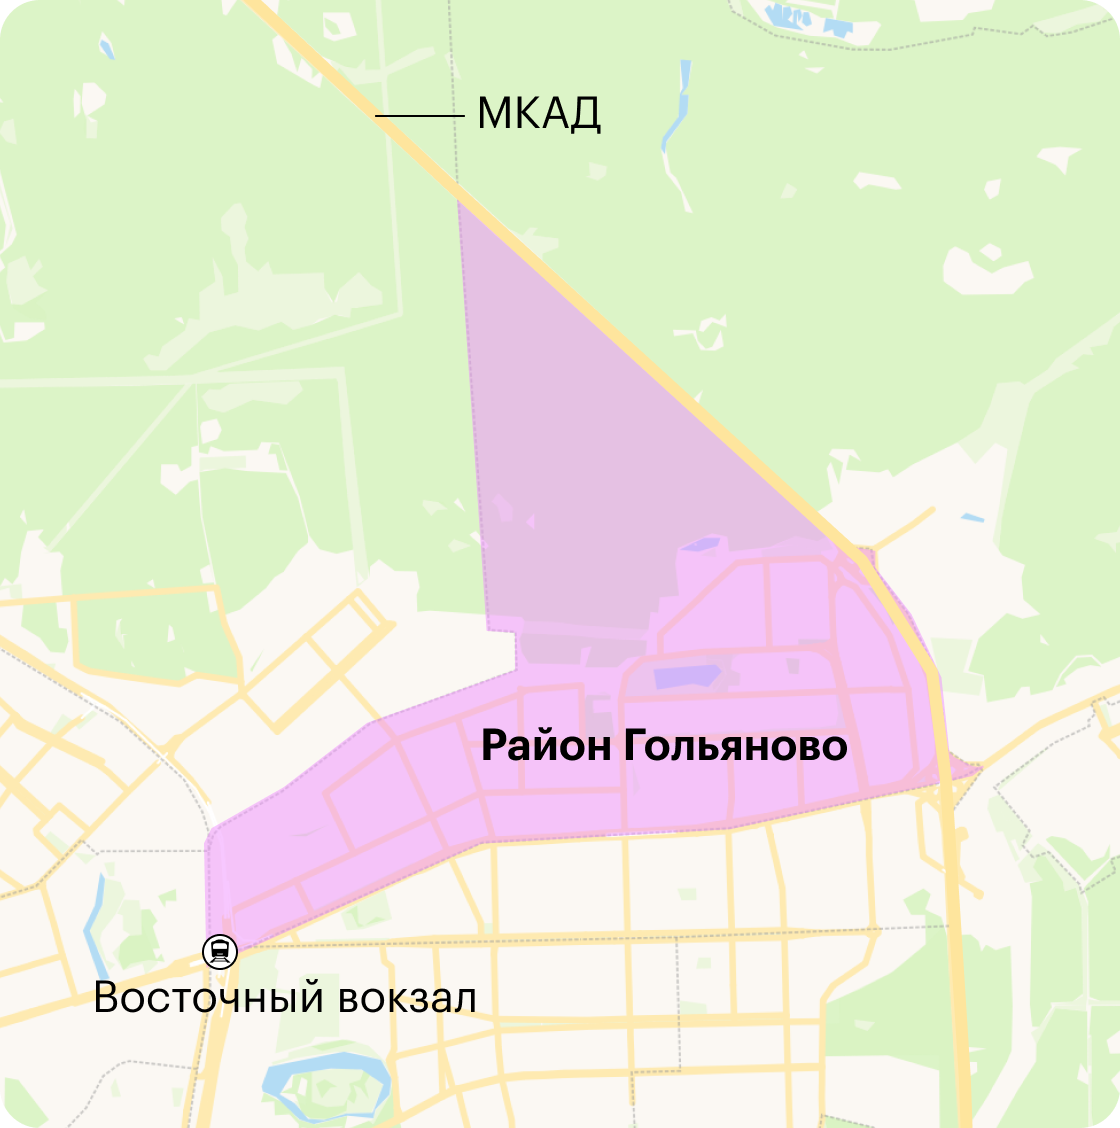 Район Гольяново находится в Восточном административном округе Москвы. Источник: yandex.ru